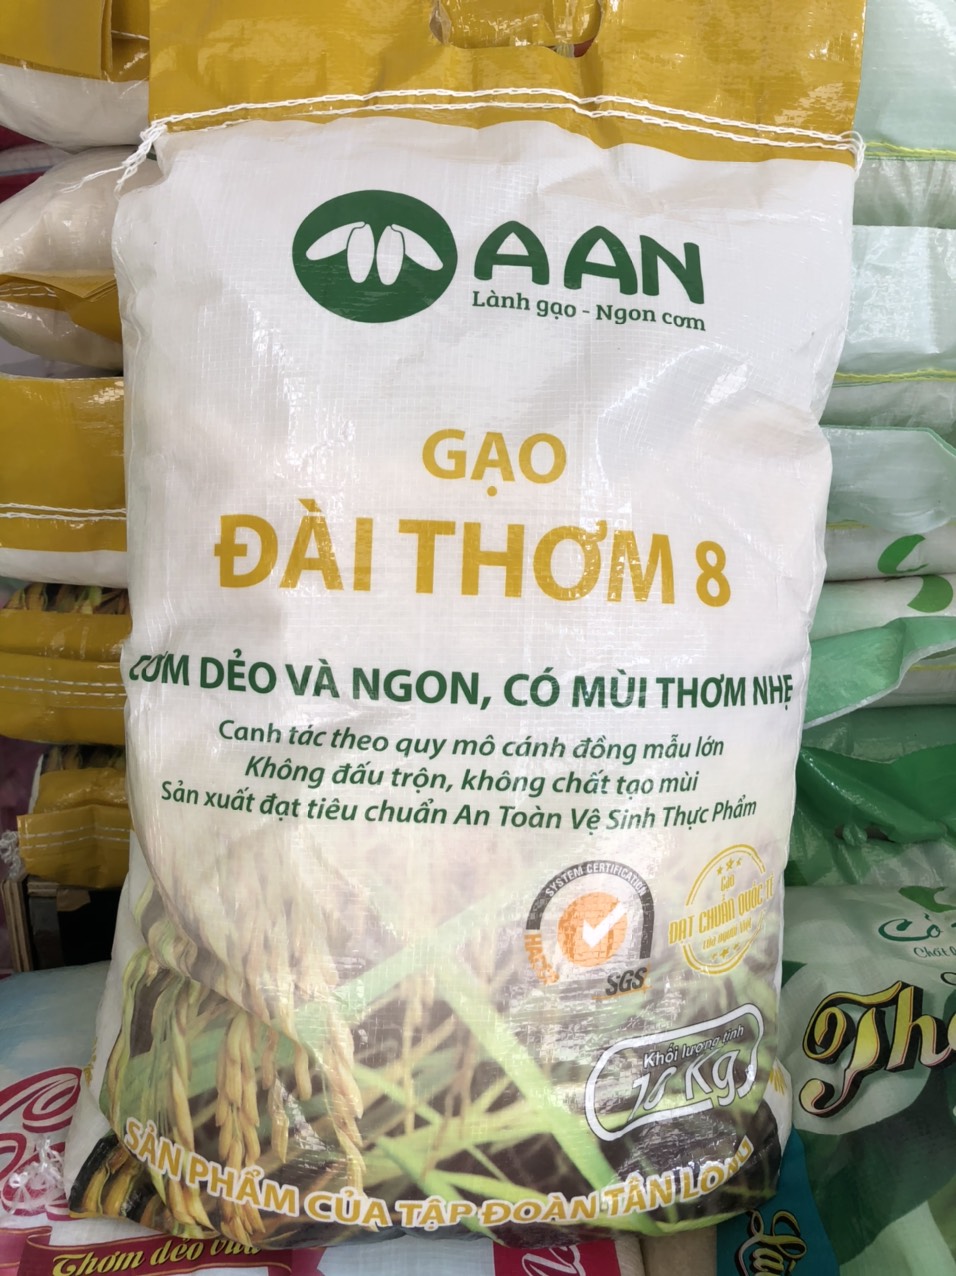 Gạo Đài Thơm 8 A An tại thị trường gạo Đà Nẵng 